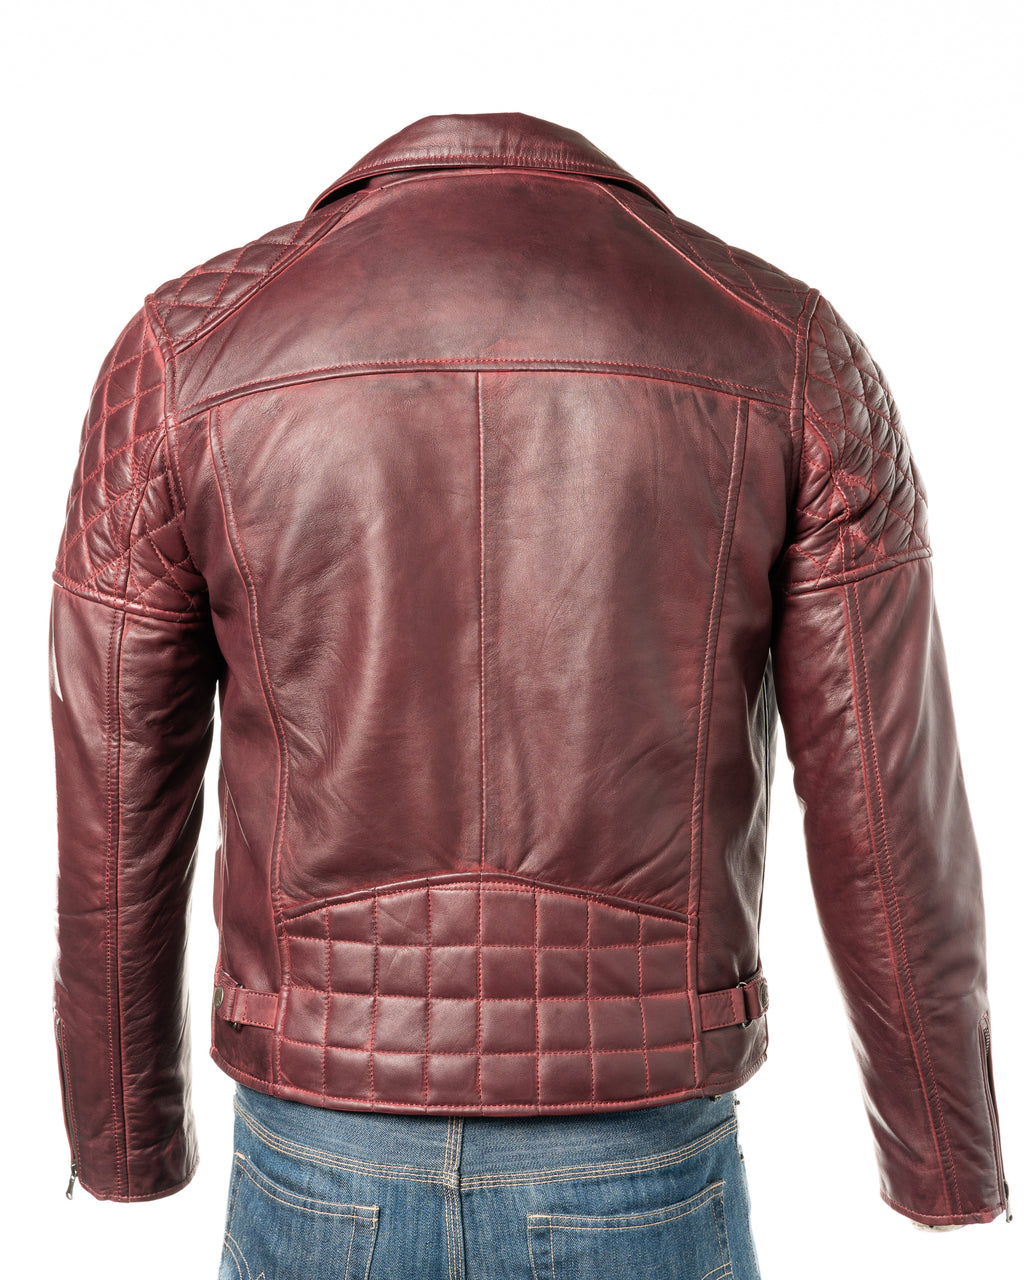 Men's Burgundy Vintage Look Biker Style Leather Jacket: Gaetano